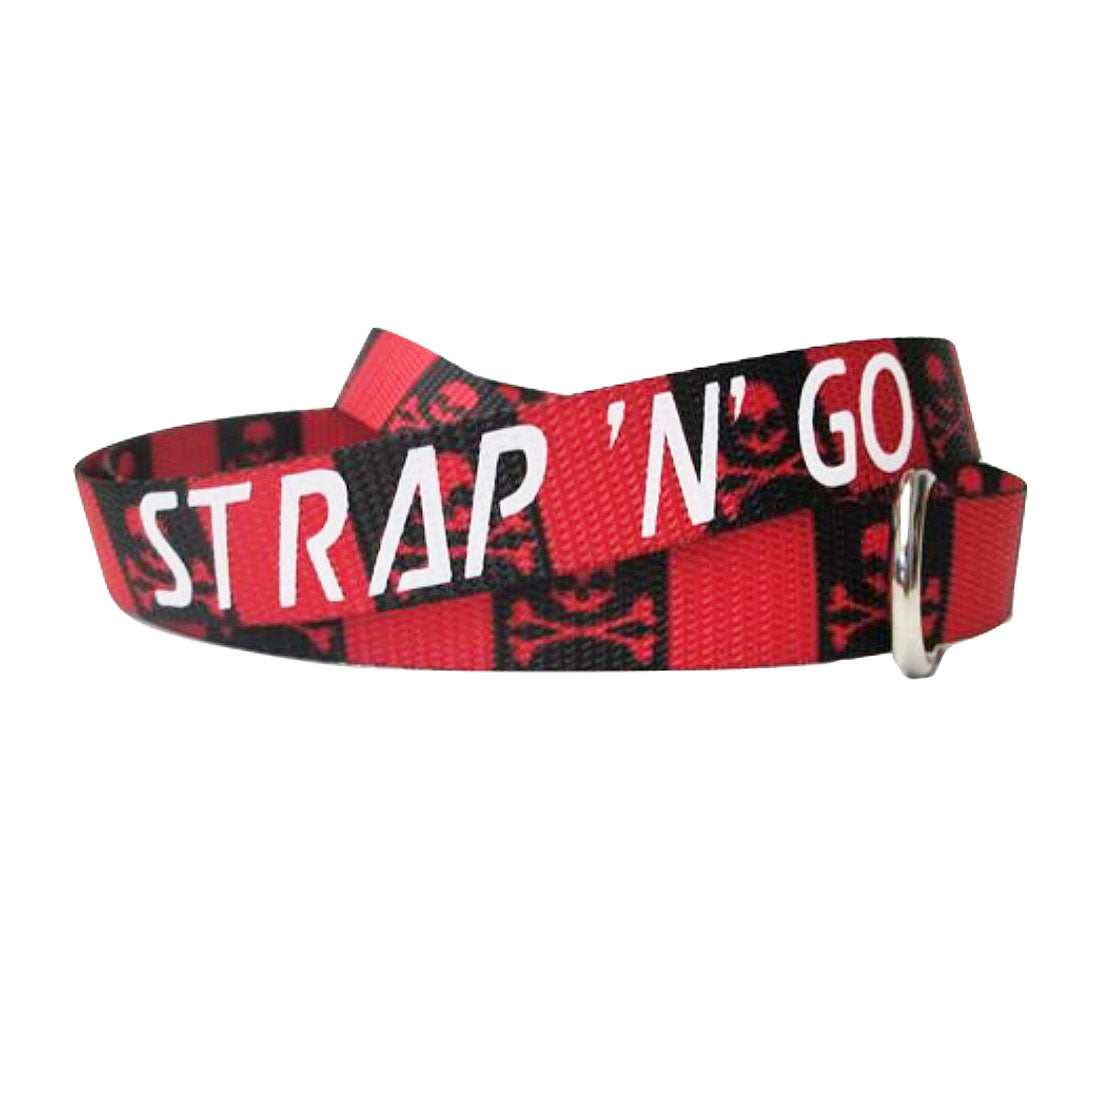 Strap N Go Skate Noose/Leash - Patterns Jolly Roger Roller Skate Accessories